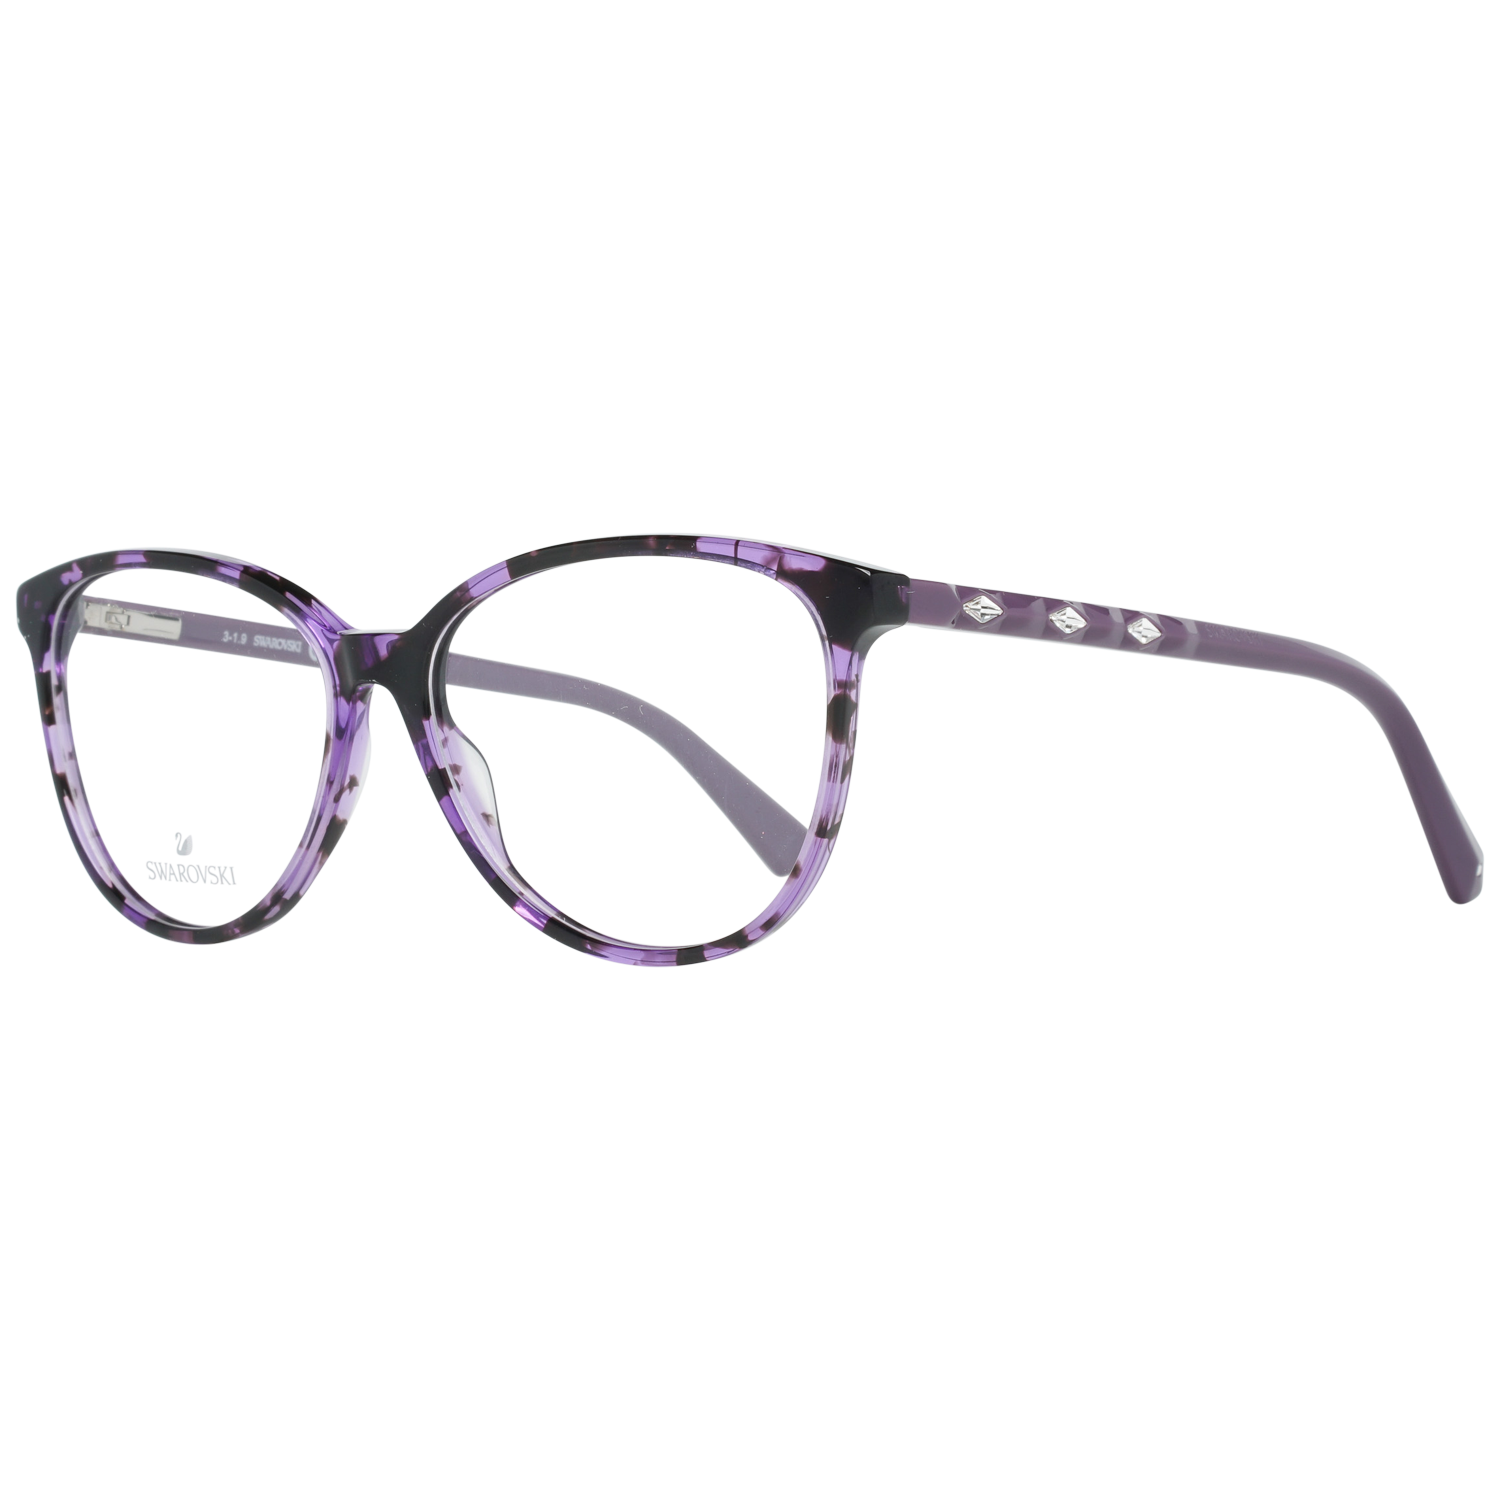 Swarovski Frames Swarovski Optical Frame SK5301 55A 54 Eyeglasses Eyewear UK USA Australia 